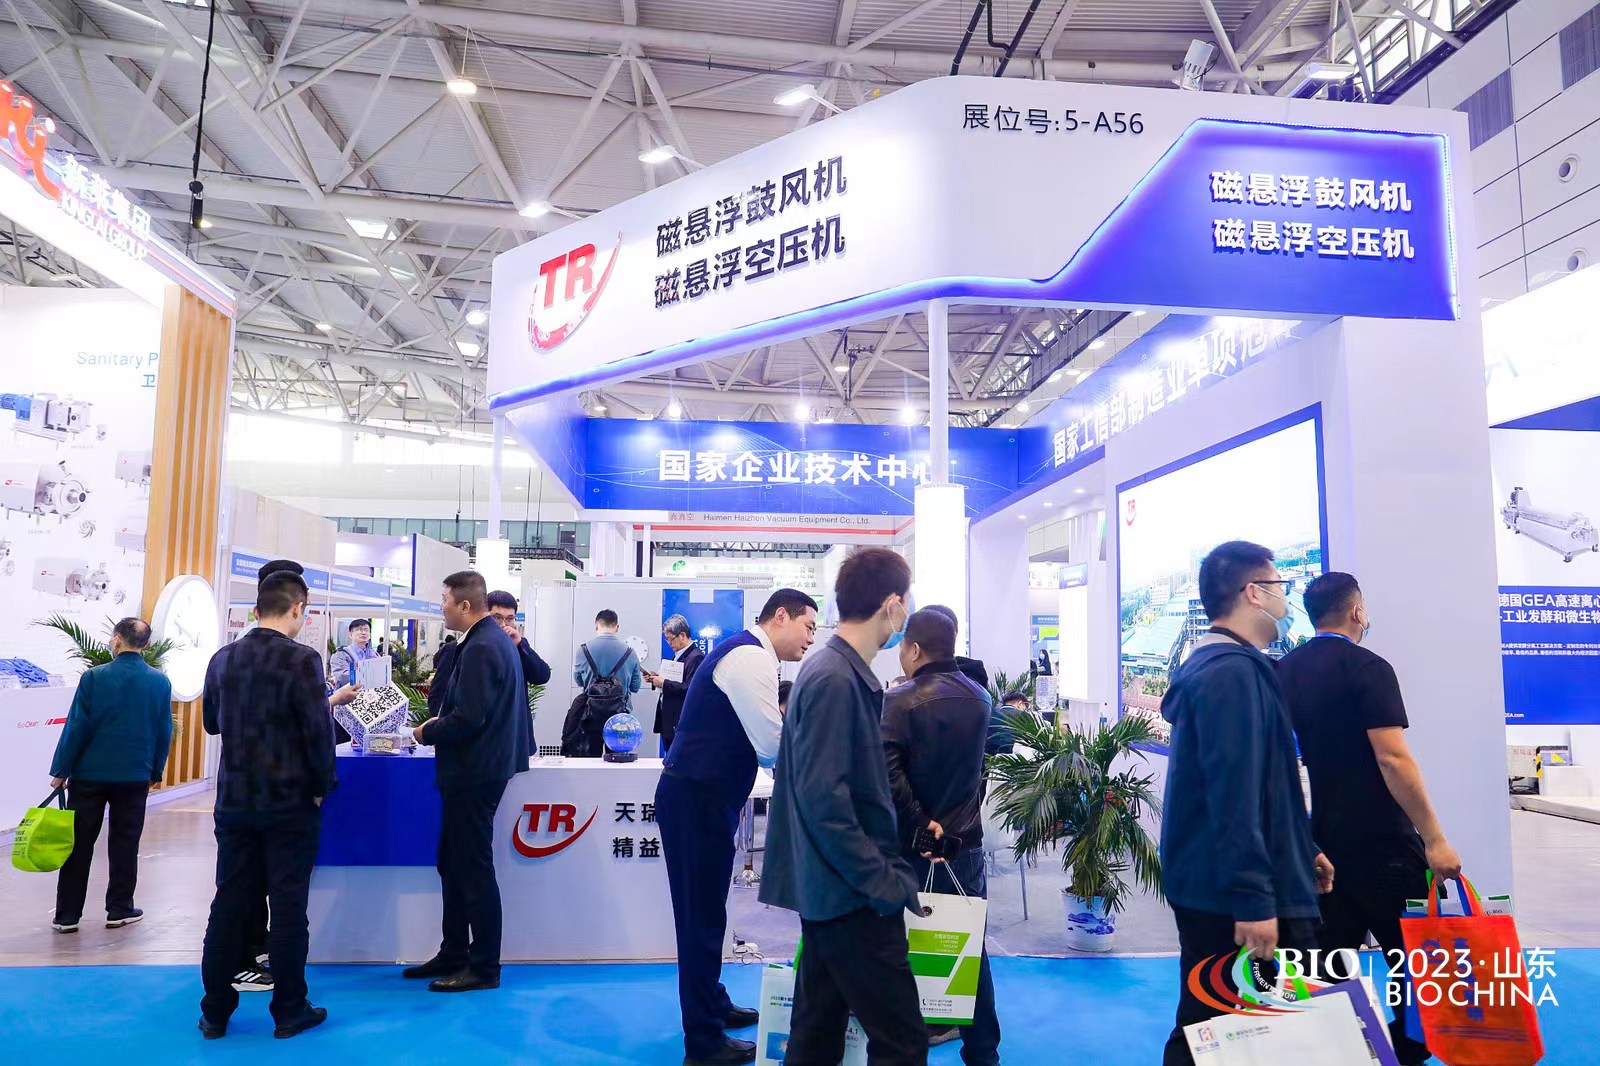 2023第十一届上海国际生物发酵系列展